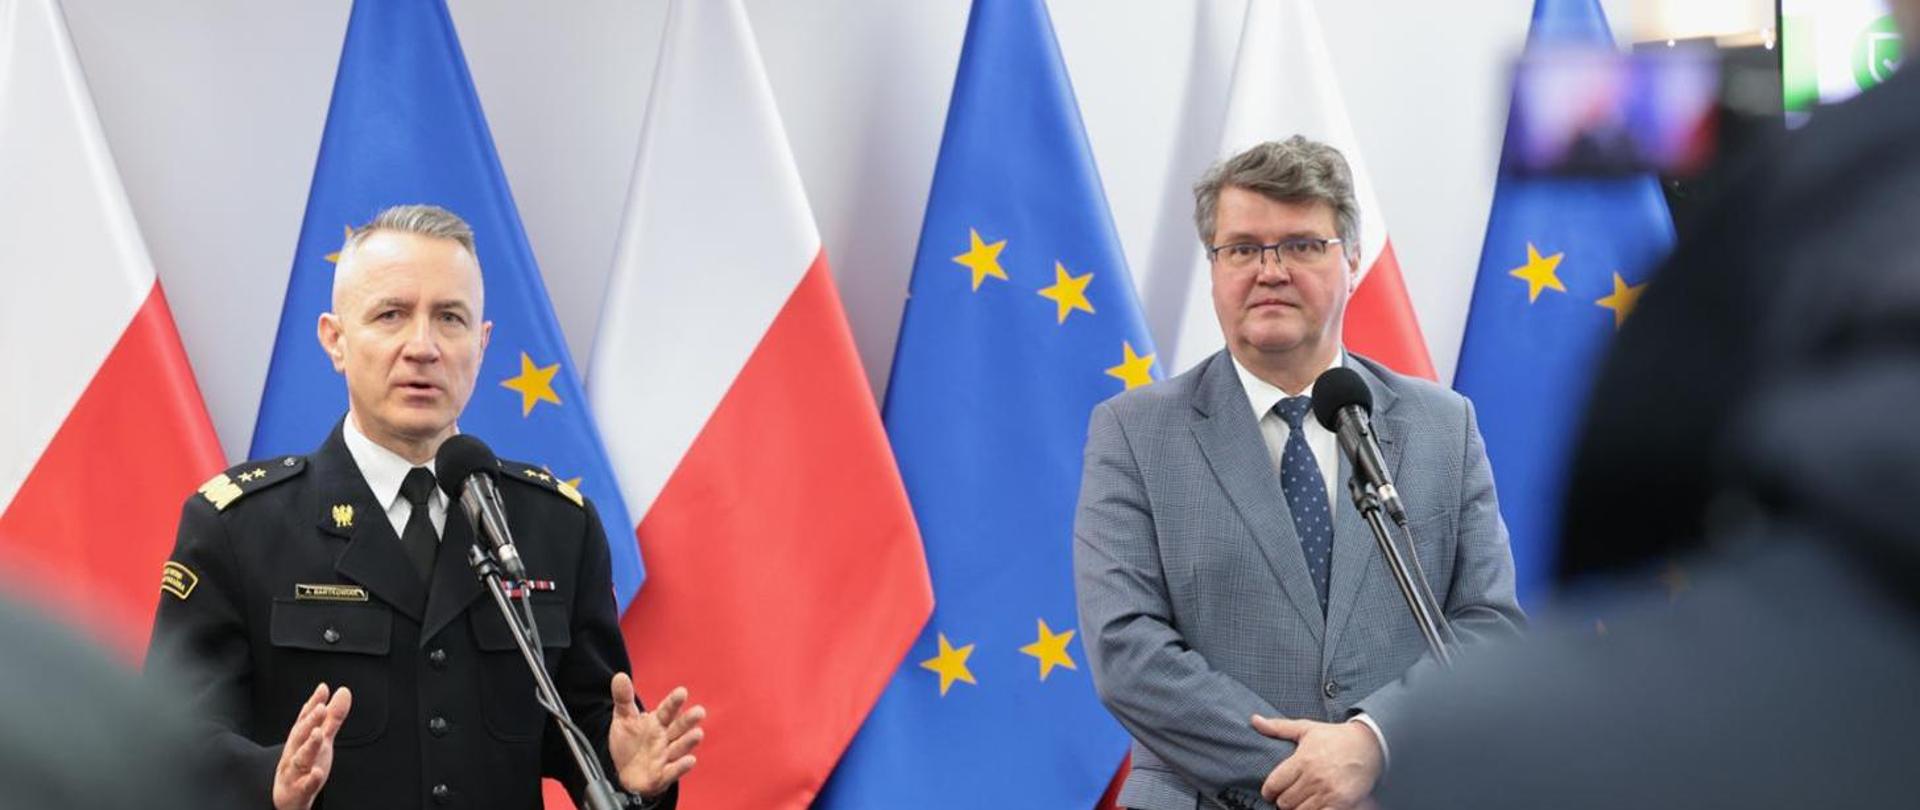 Po lewej stronie mówiący do mikrofonu Komendant Główny PSP gen. bryg. Andrzej Bartkowiak w mundurze wyjściowym. Po prawej stronie w garniturze stoi Wiceminister MSWiA Maciej Wąsik. W tle flagi Polski oraz Unii Europejskiej.